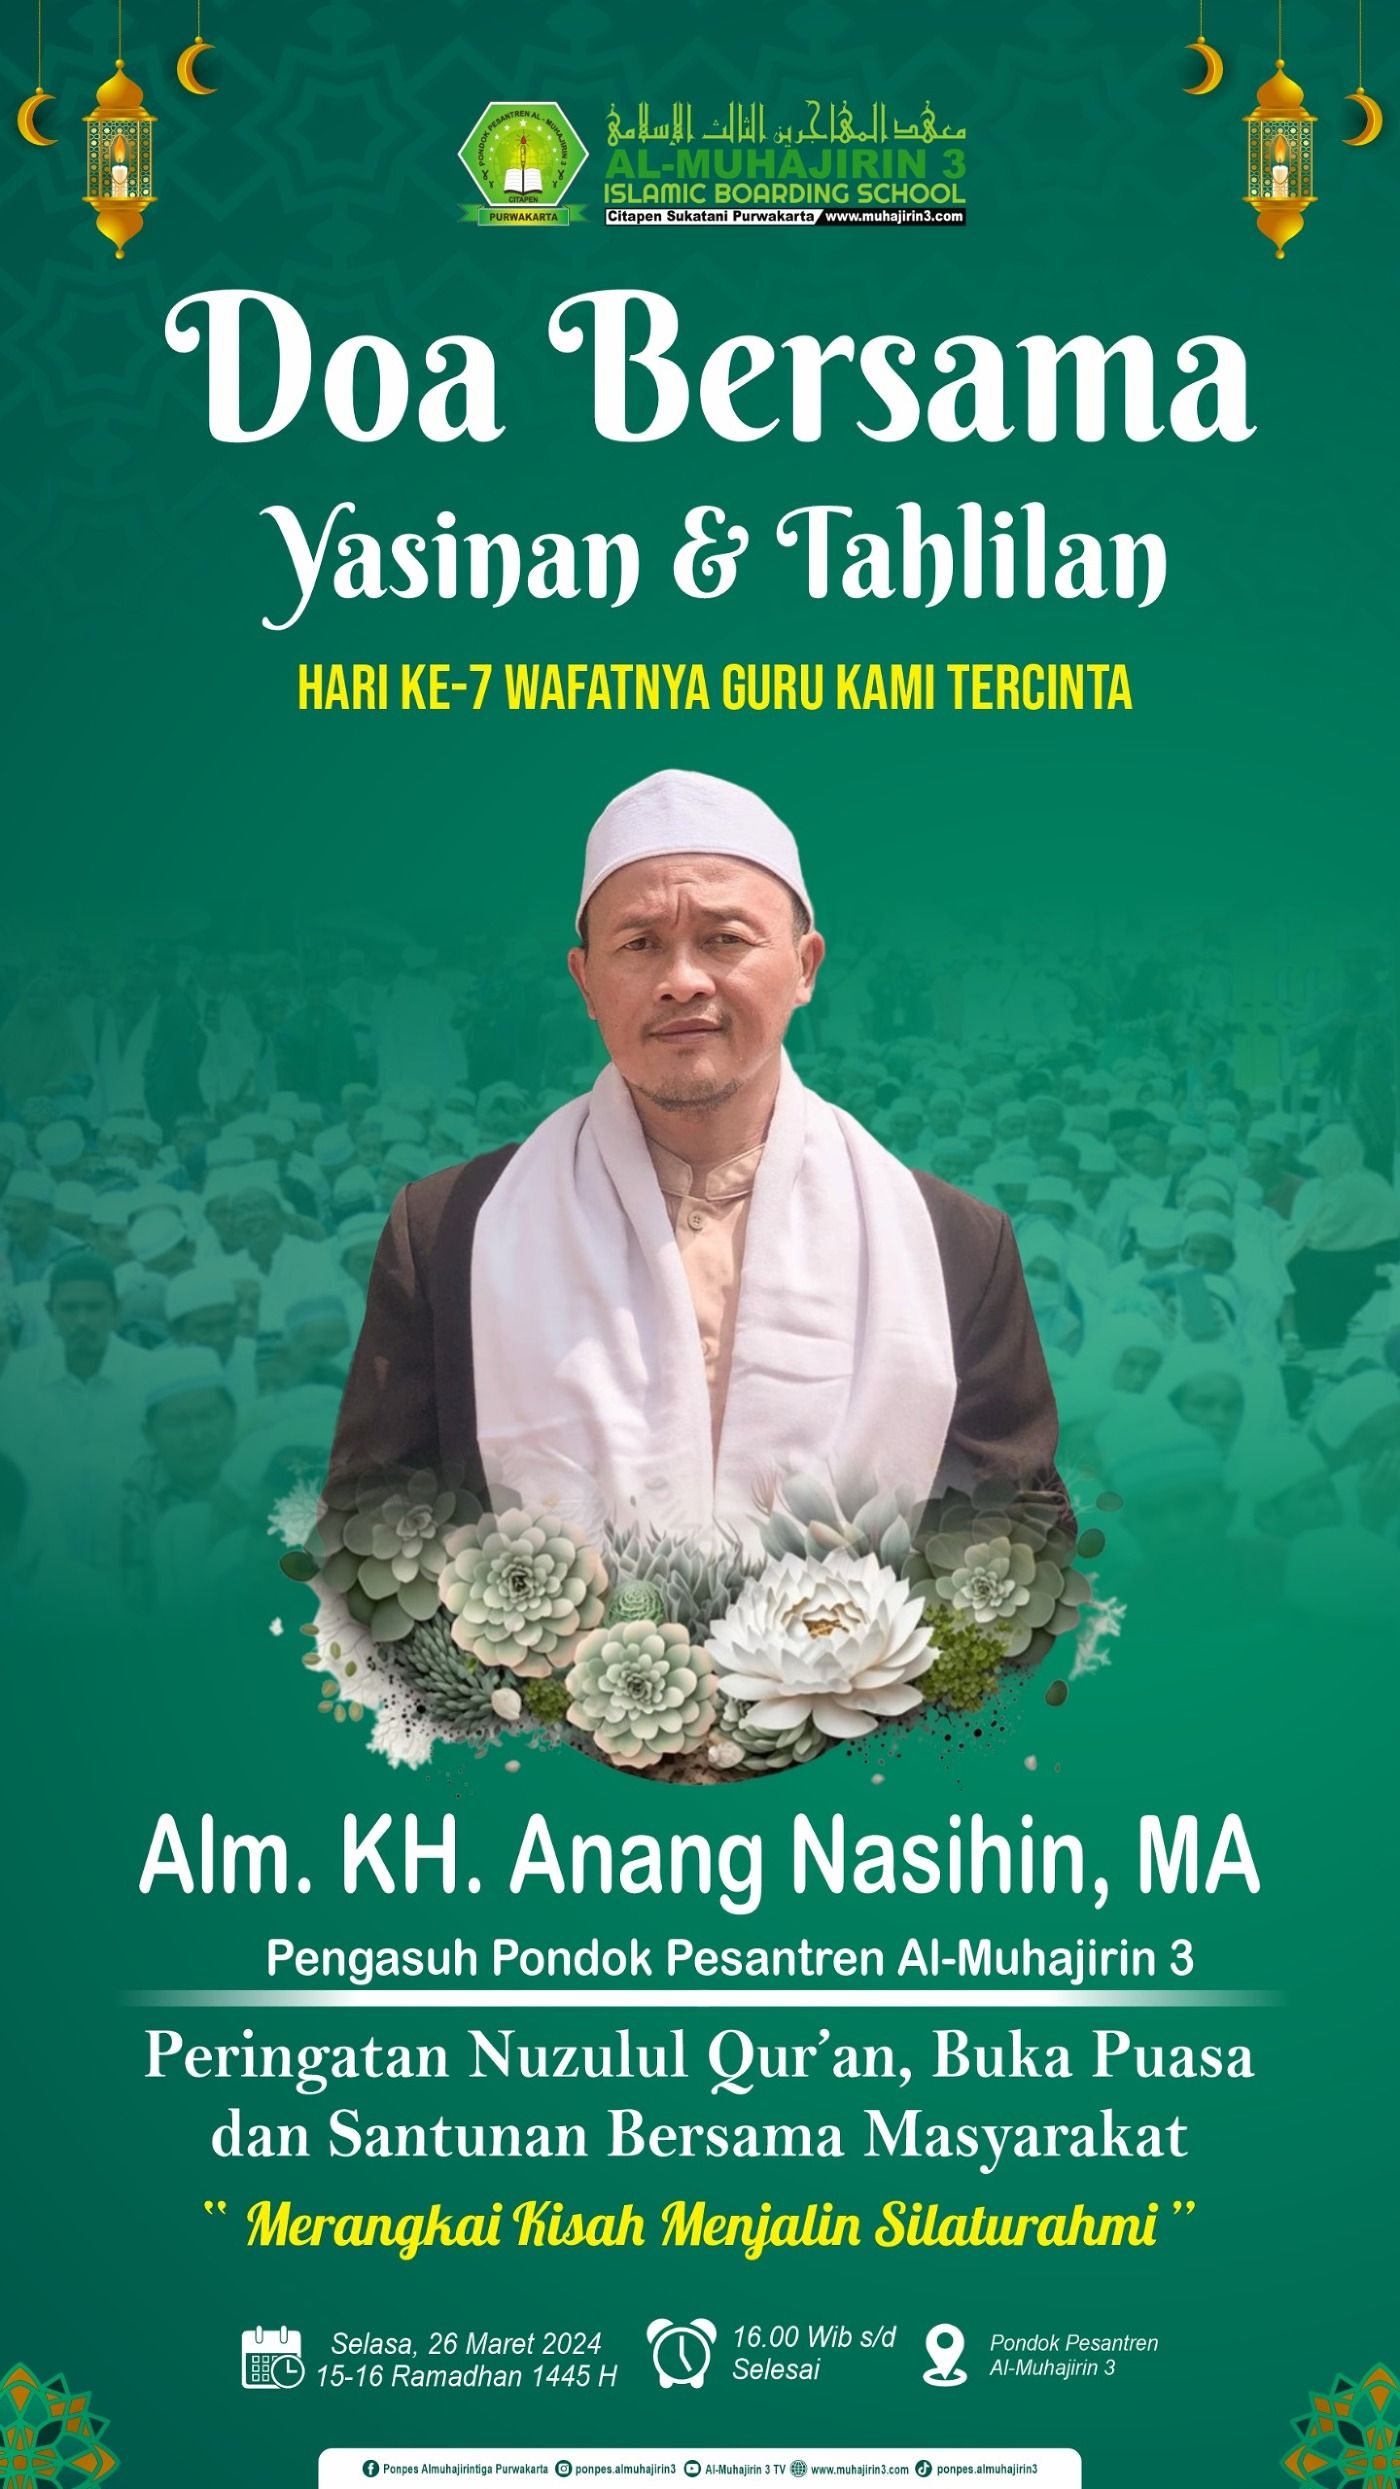 Doa Bersama Yasinan dan Tahlilan Untuk Alm. KH. Anang Nasihin,MA Bin H. Abdul Wahid